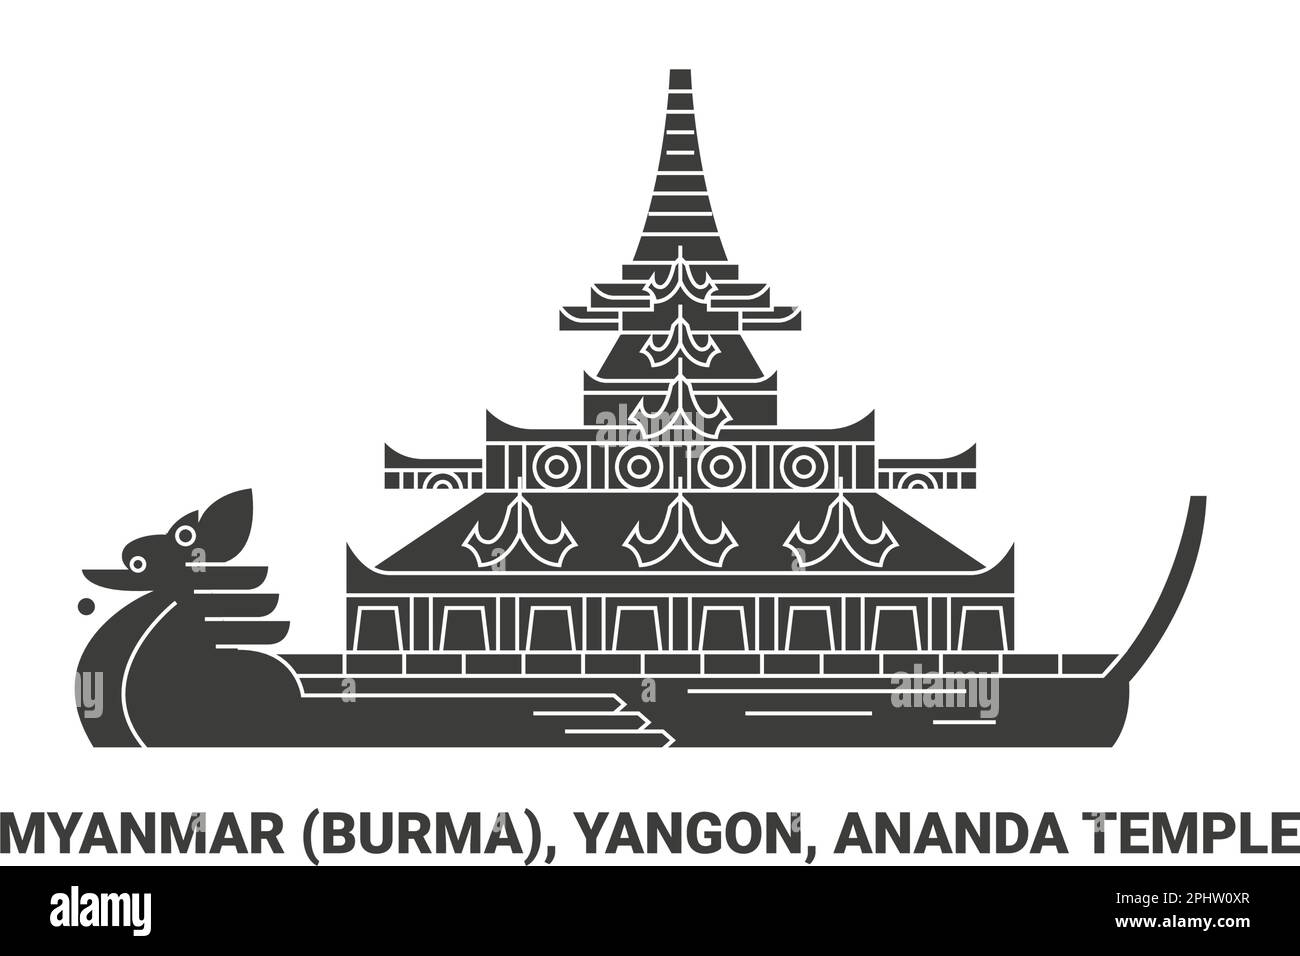 Myanmar Burma, Yangon, Ananda Temple, travel landmark vector illustration Stock Vector